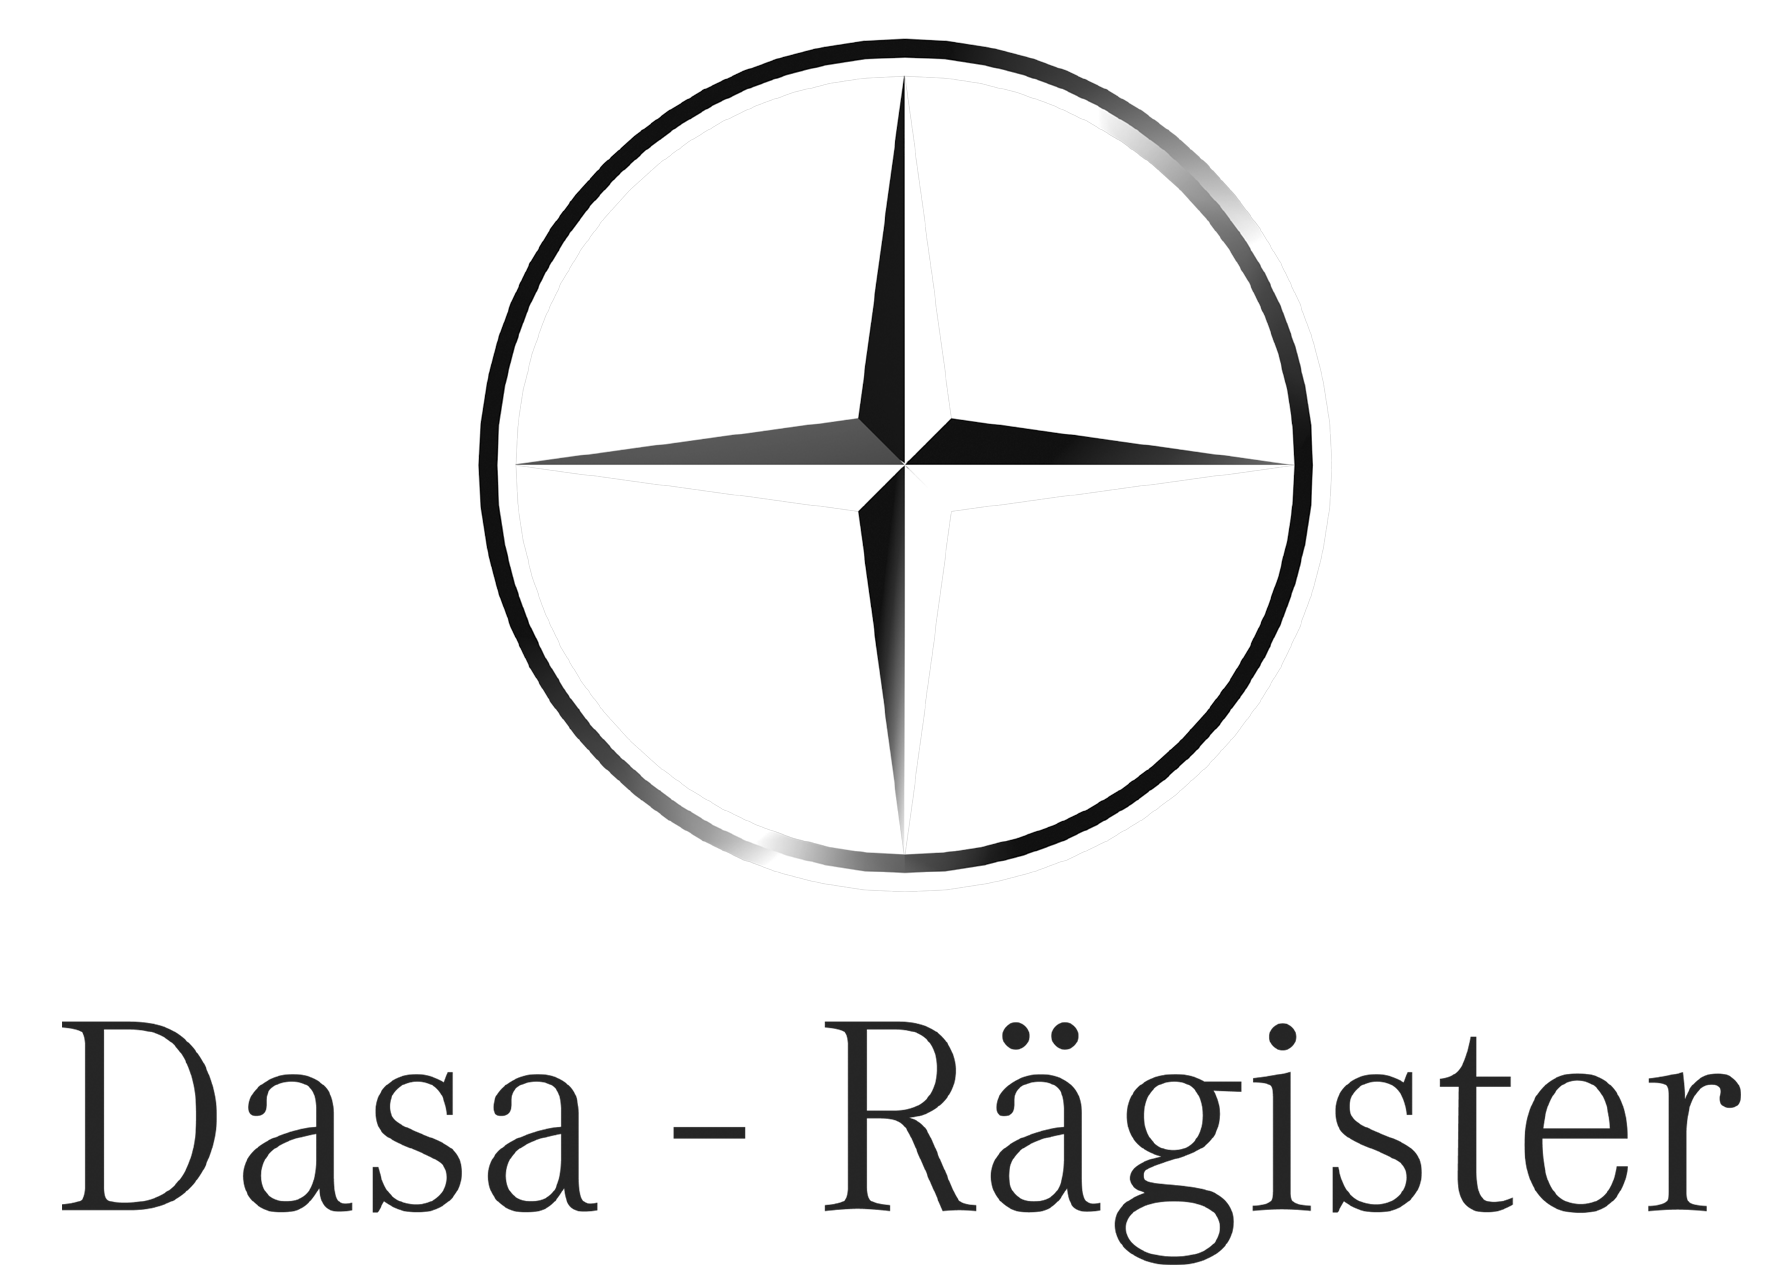 Ente certificato per la formazione dal sistema di gestione per la qualità Dasa-Rägister